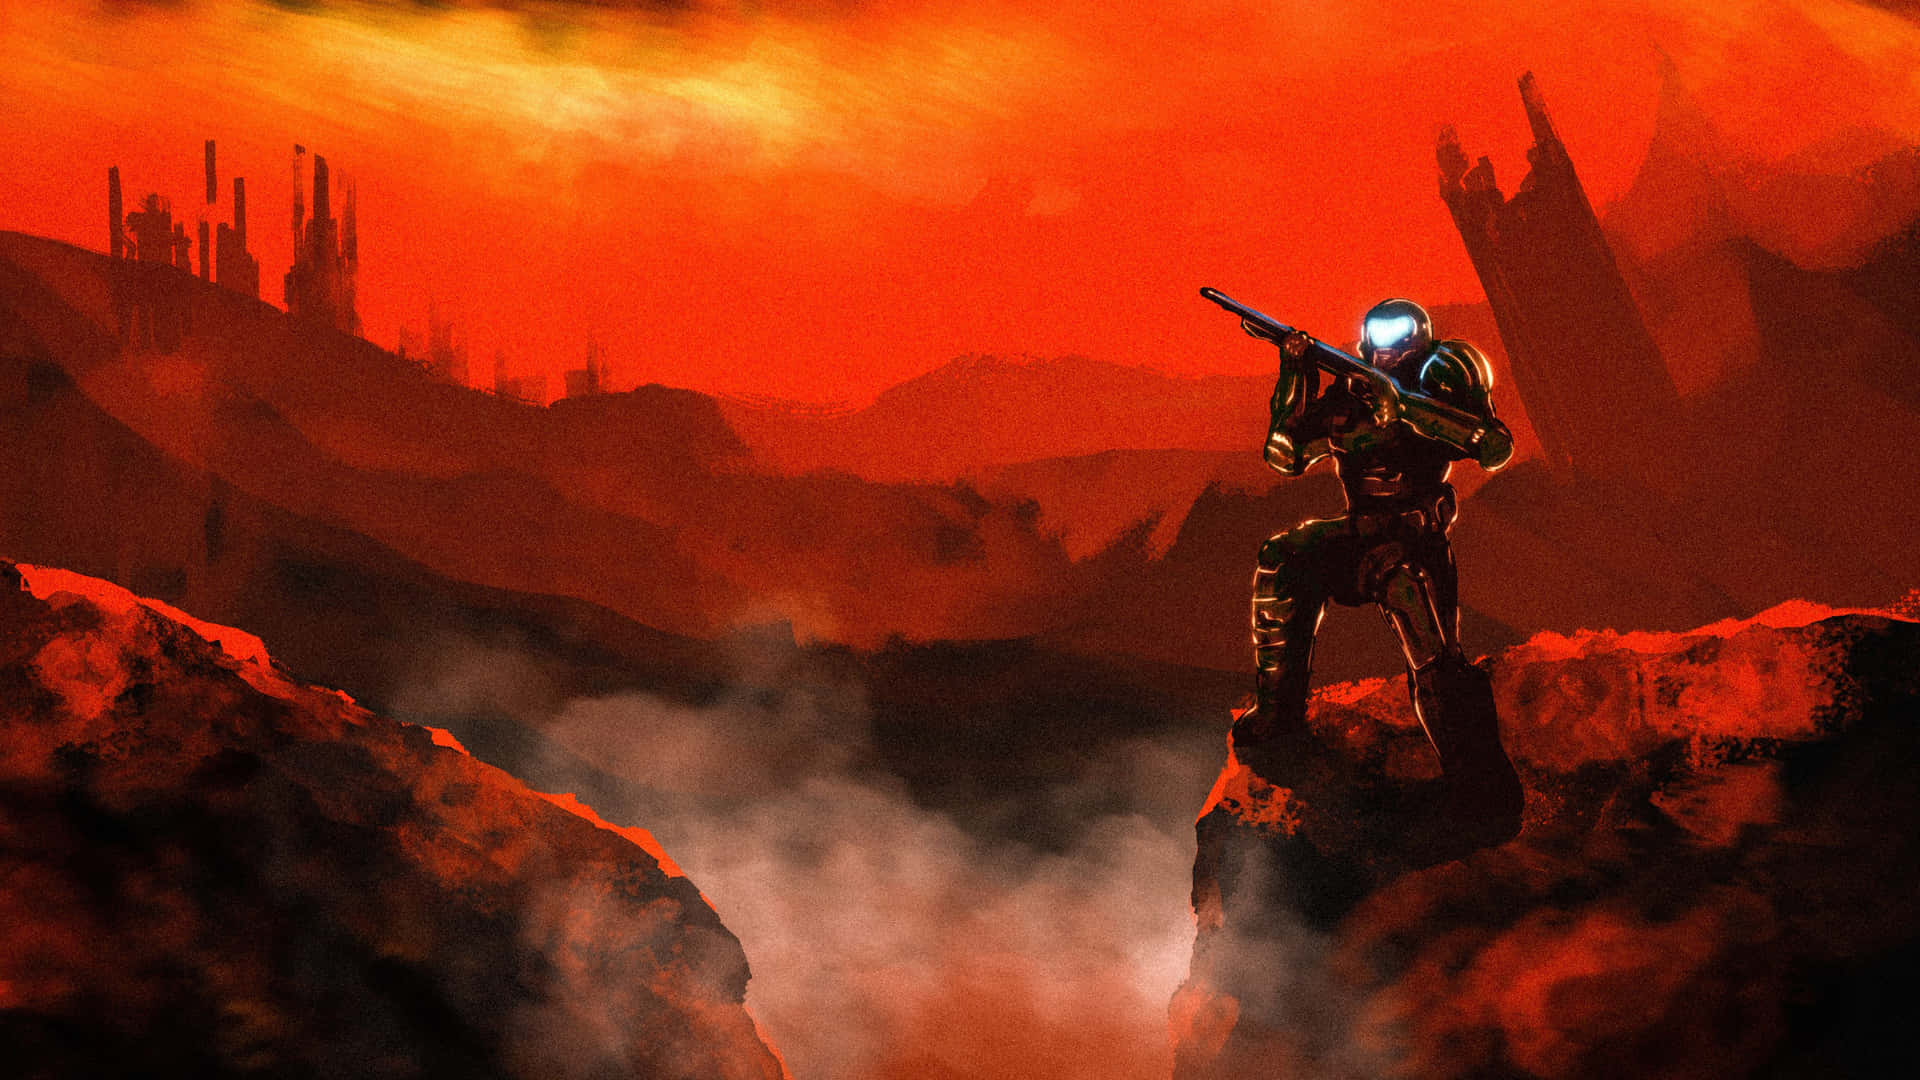 Tag din spiloplevelse til et højere niveau med Doom Eternal 4k tapet. Wallpaper